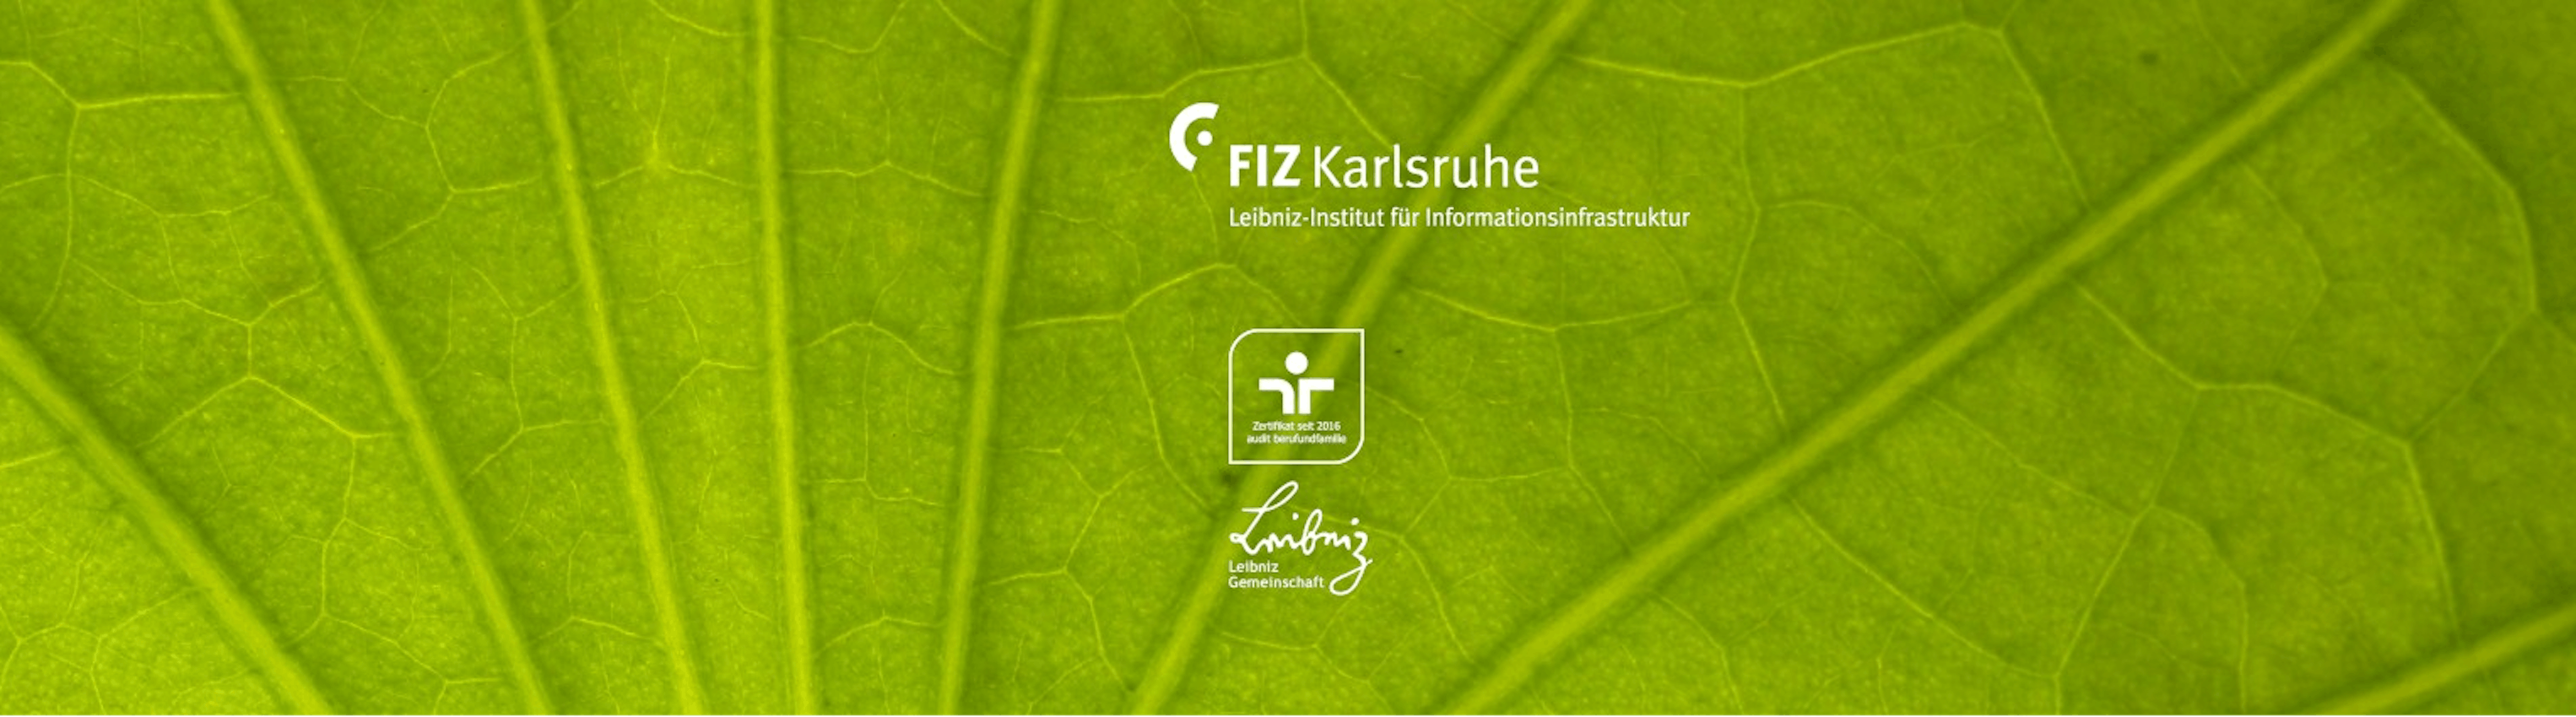 FIZ Karlsruhe – Leibniz-Institut für Informationsinfrastruktur 